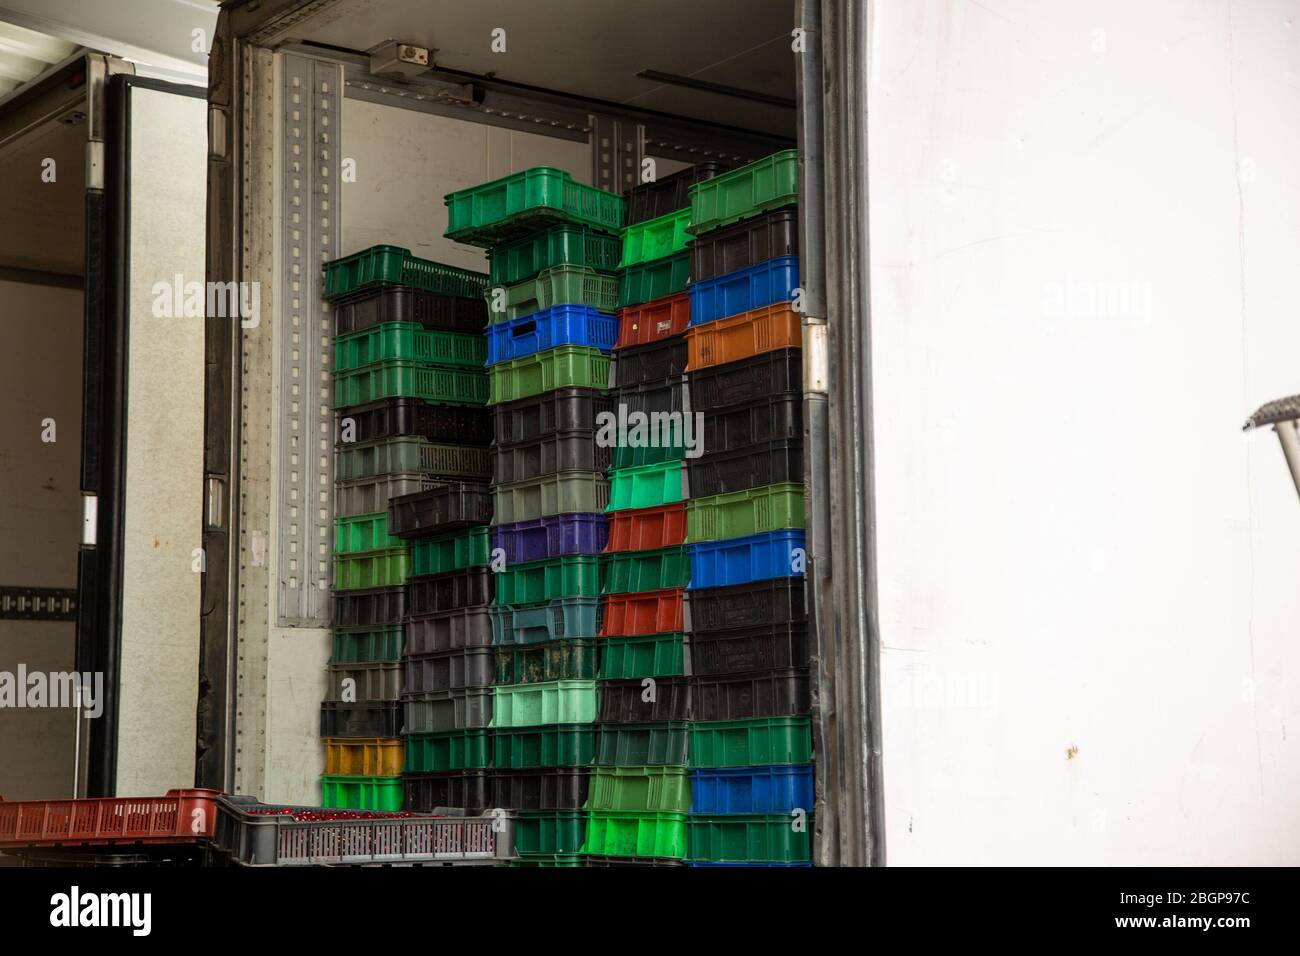 Chargement du chariot. Des boîtes en plastique avec baies mûres sont chargées dans le réfrigérateur. Banque D'Images